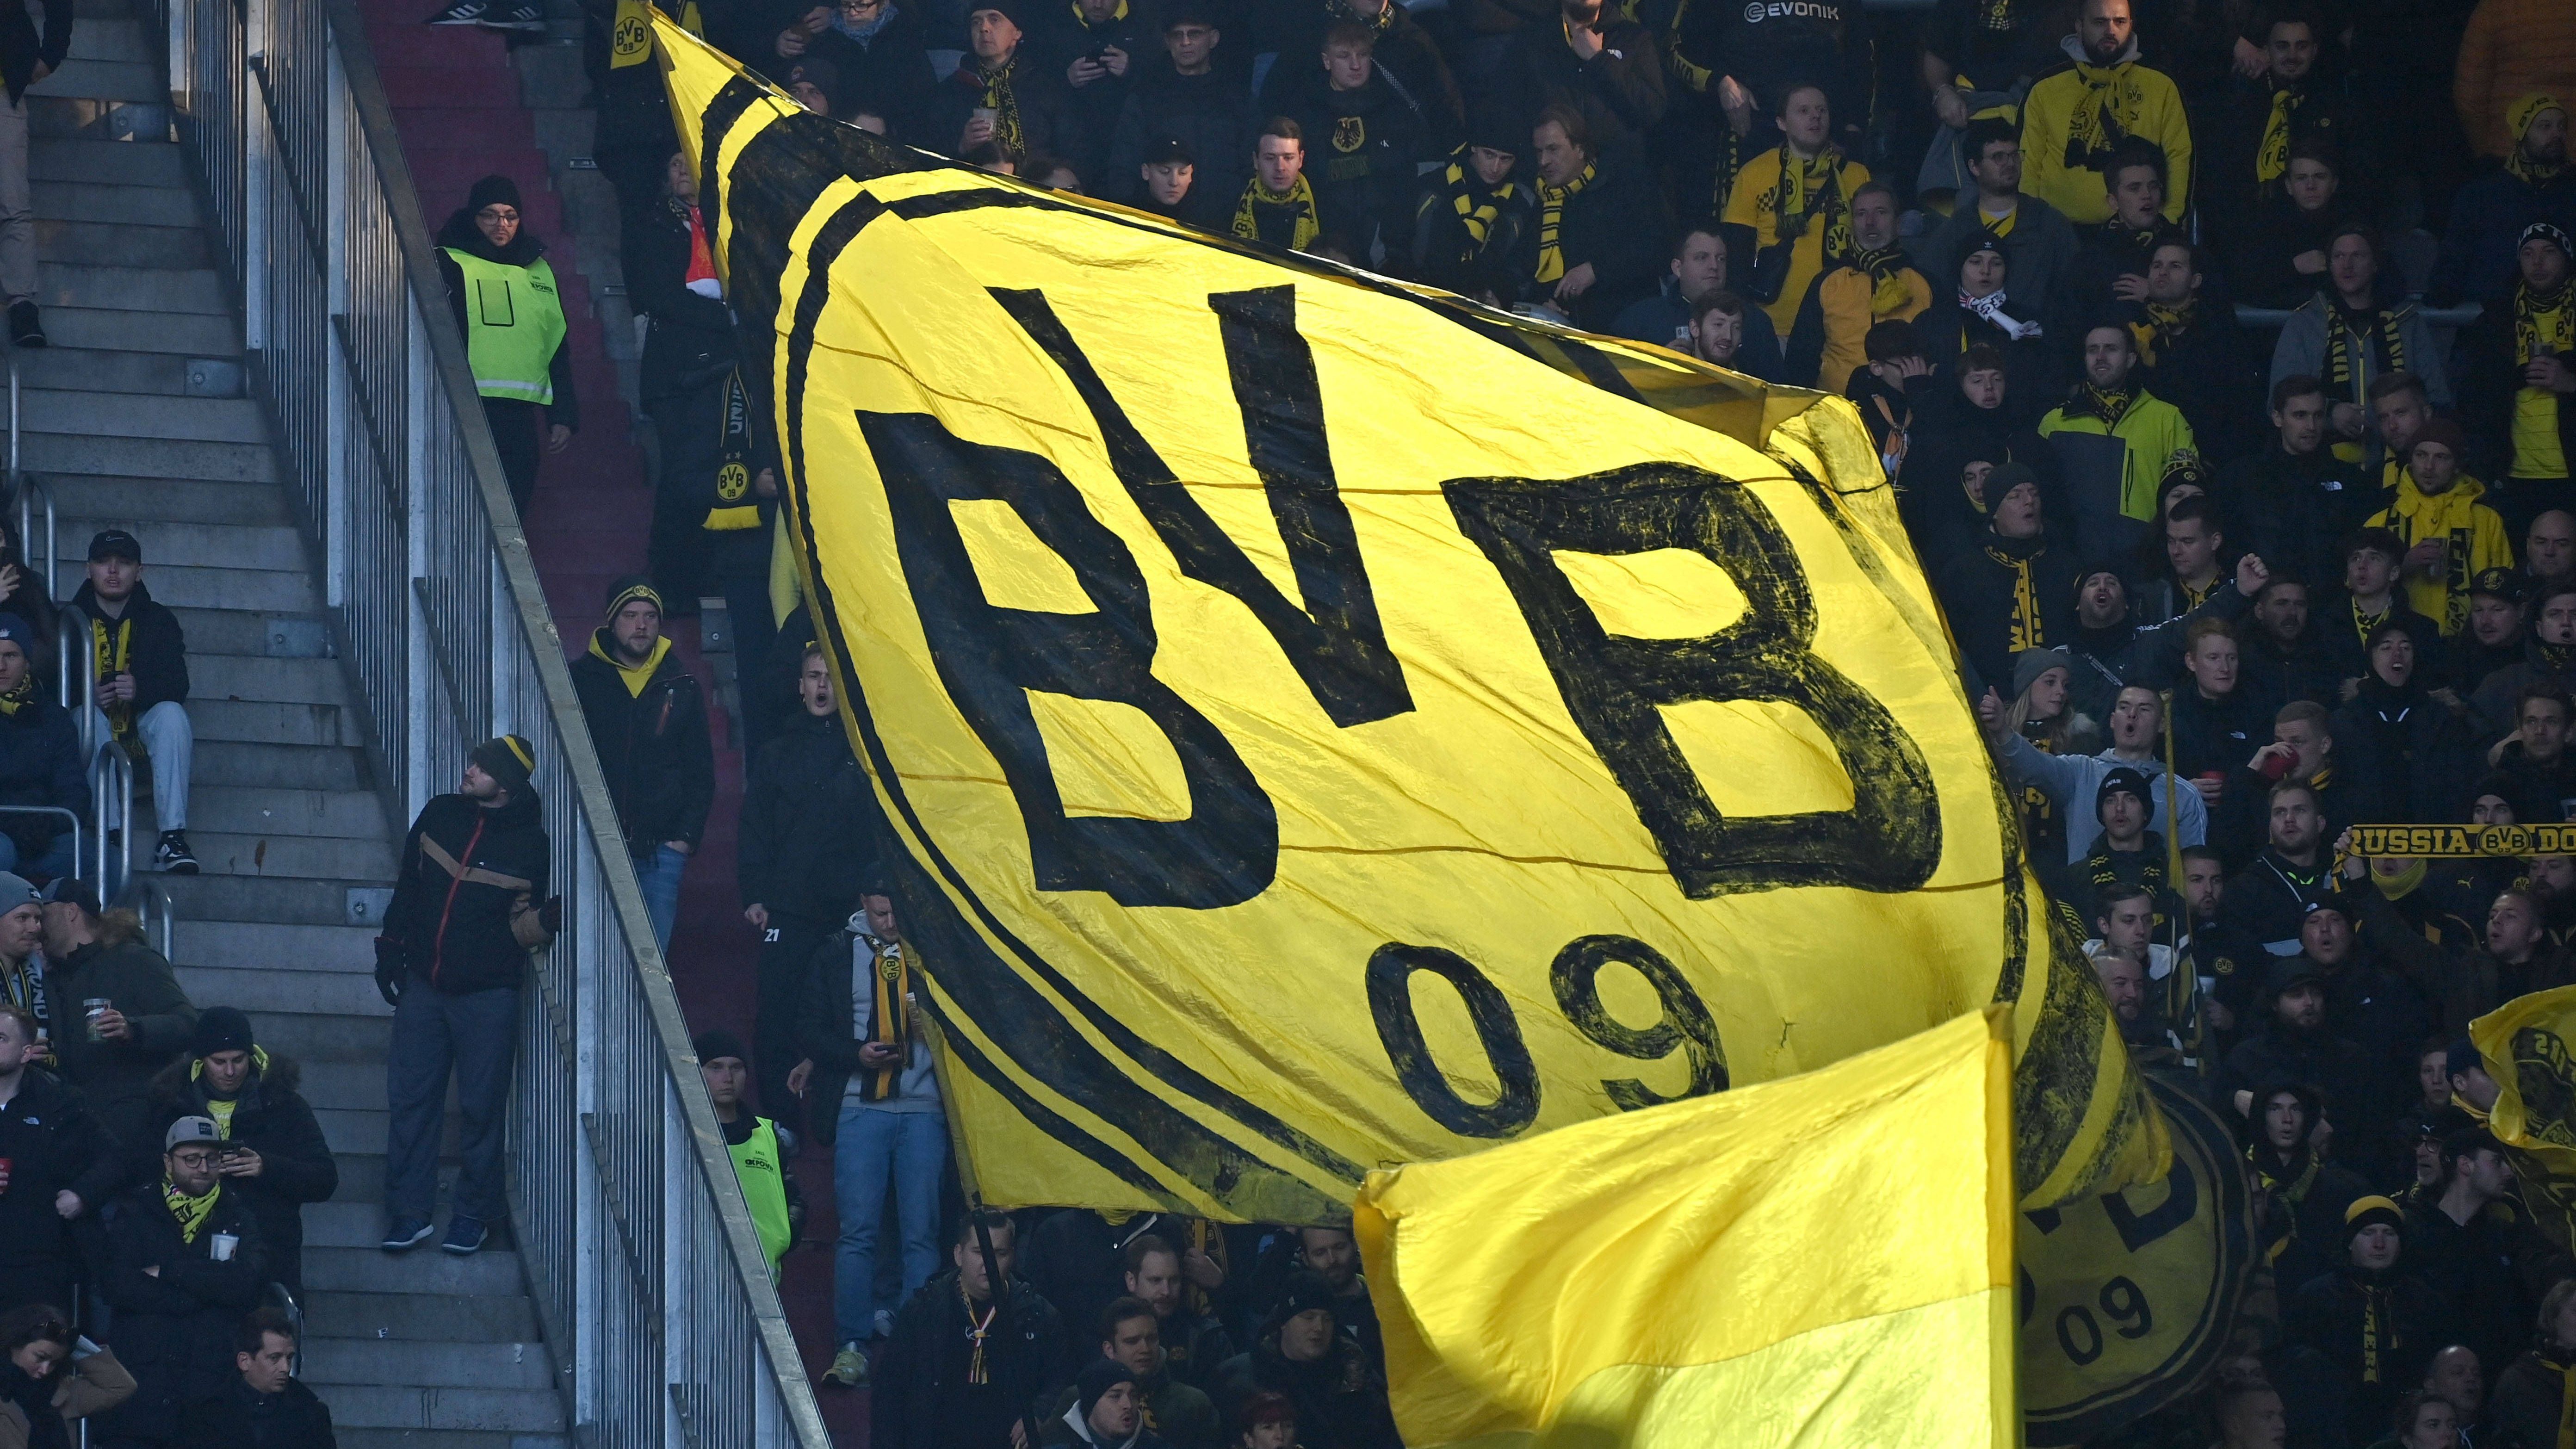 <strong>Platz 14: Borussia Dortmund (19. Dezember 1909)</strong><br>Knapp ein Jahr dauerte es, bis Borussia Dortmund die Aufnahme in den Westdeutschen Spielverband (WSV) erreichte. Gegründet wurde der Verein hingegen am 19. Dezember 1909 als "Ballspiel-Verein Borussia 1909". Und das aus Protest gegen den damaligen Organisator der Jugendgruppe der katholischen Dreifaltigkeitsgemeinde.<br><br><strong>Saisons in der Bundesliga: 55</strong>